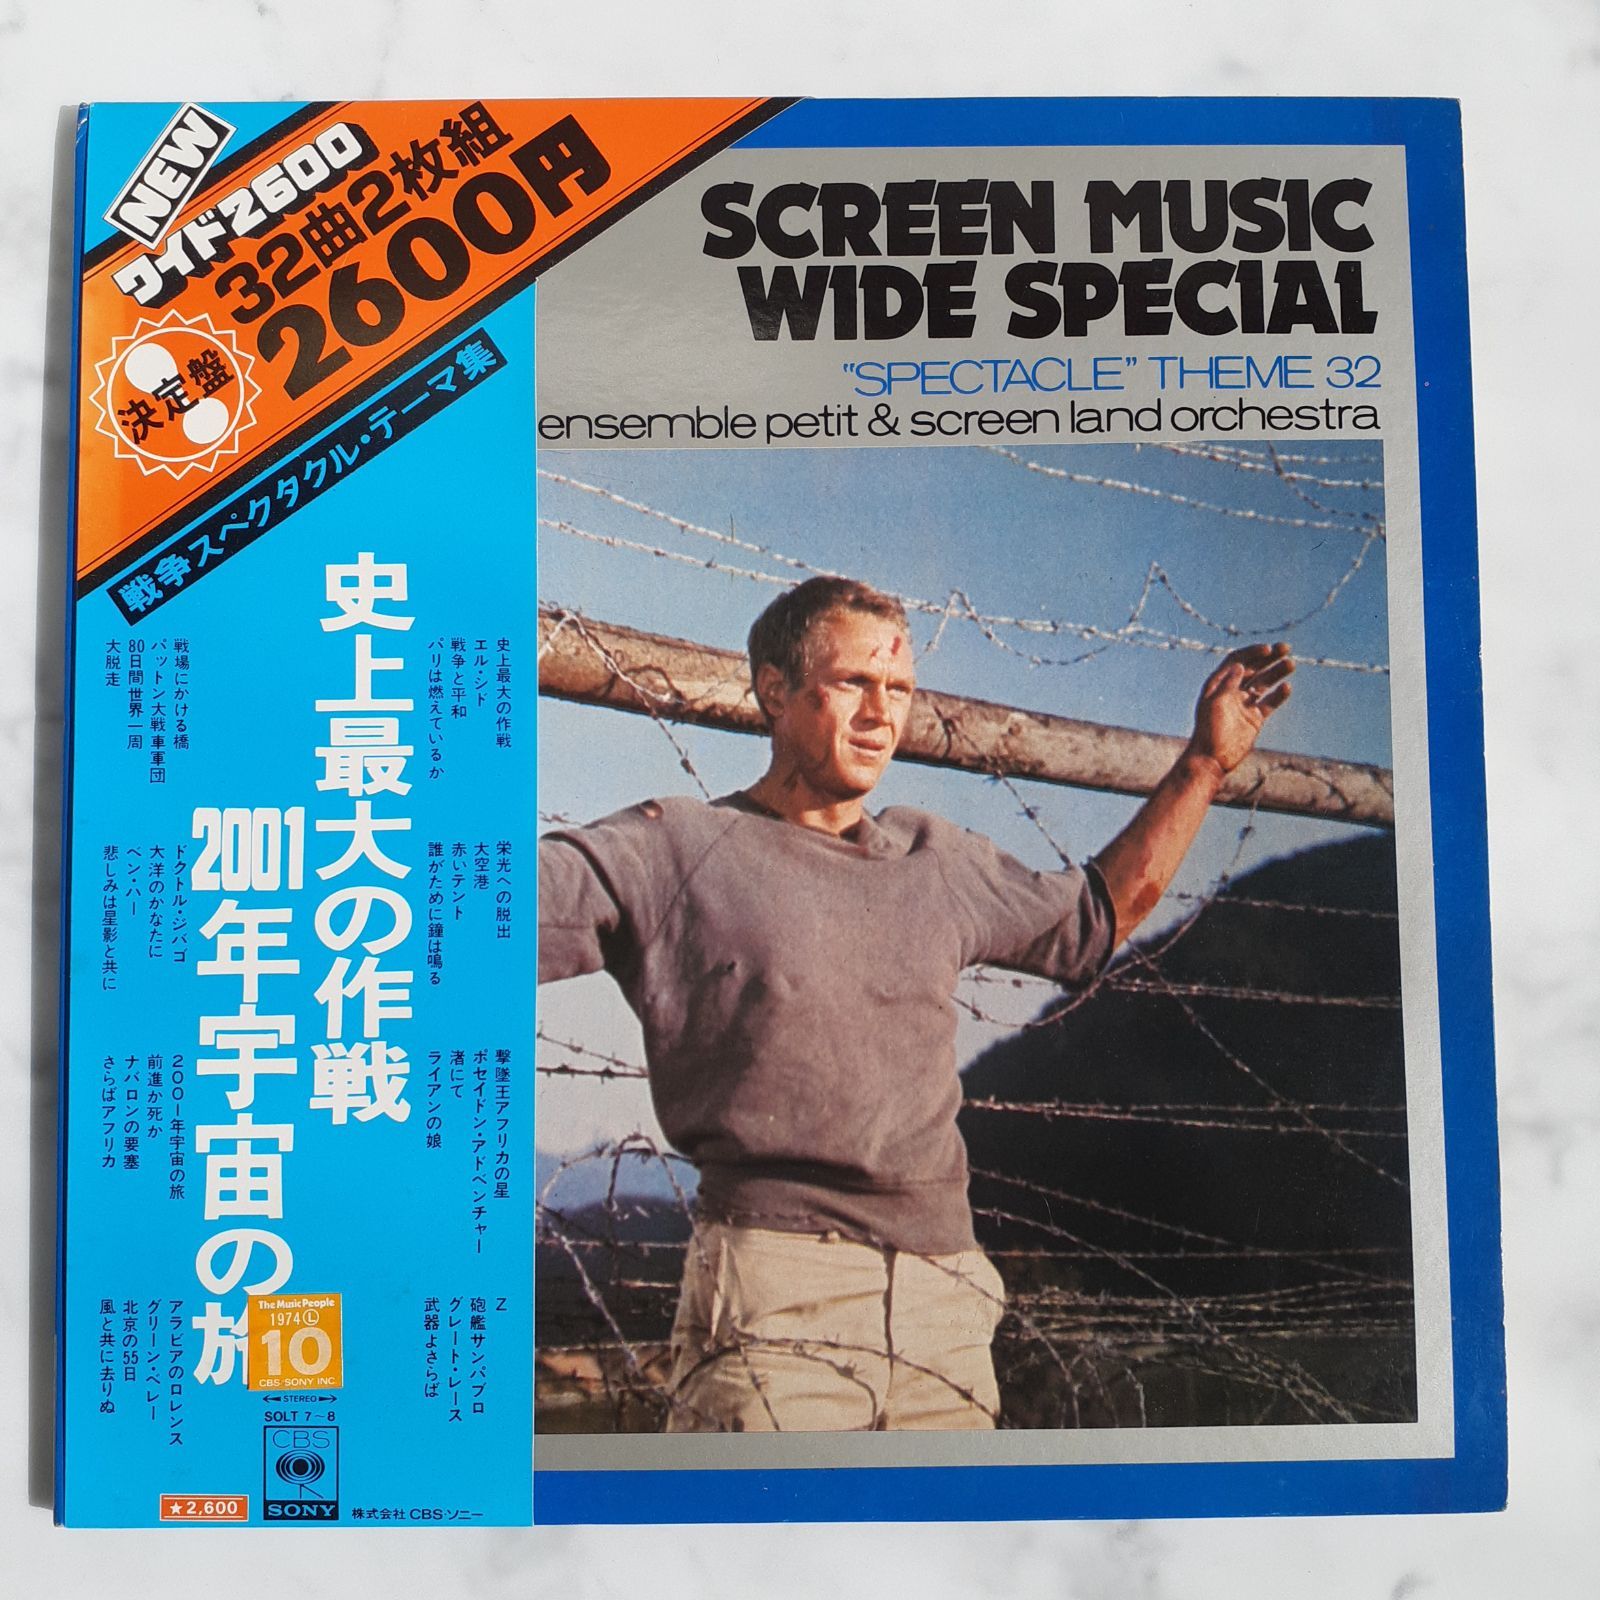 スクリーンミュージックワイドスペシャル SCREEN MUSIC WIDE SPECIAL 36曲2枚組 レコード  【インテリア・古雑貨】デザイントーク メルカリ